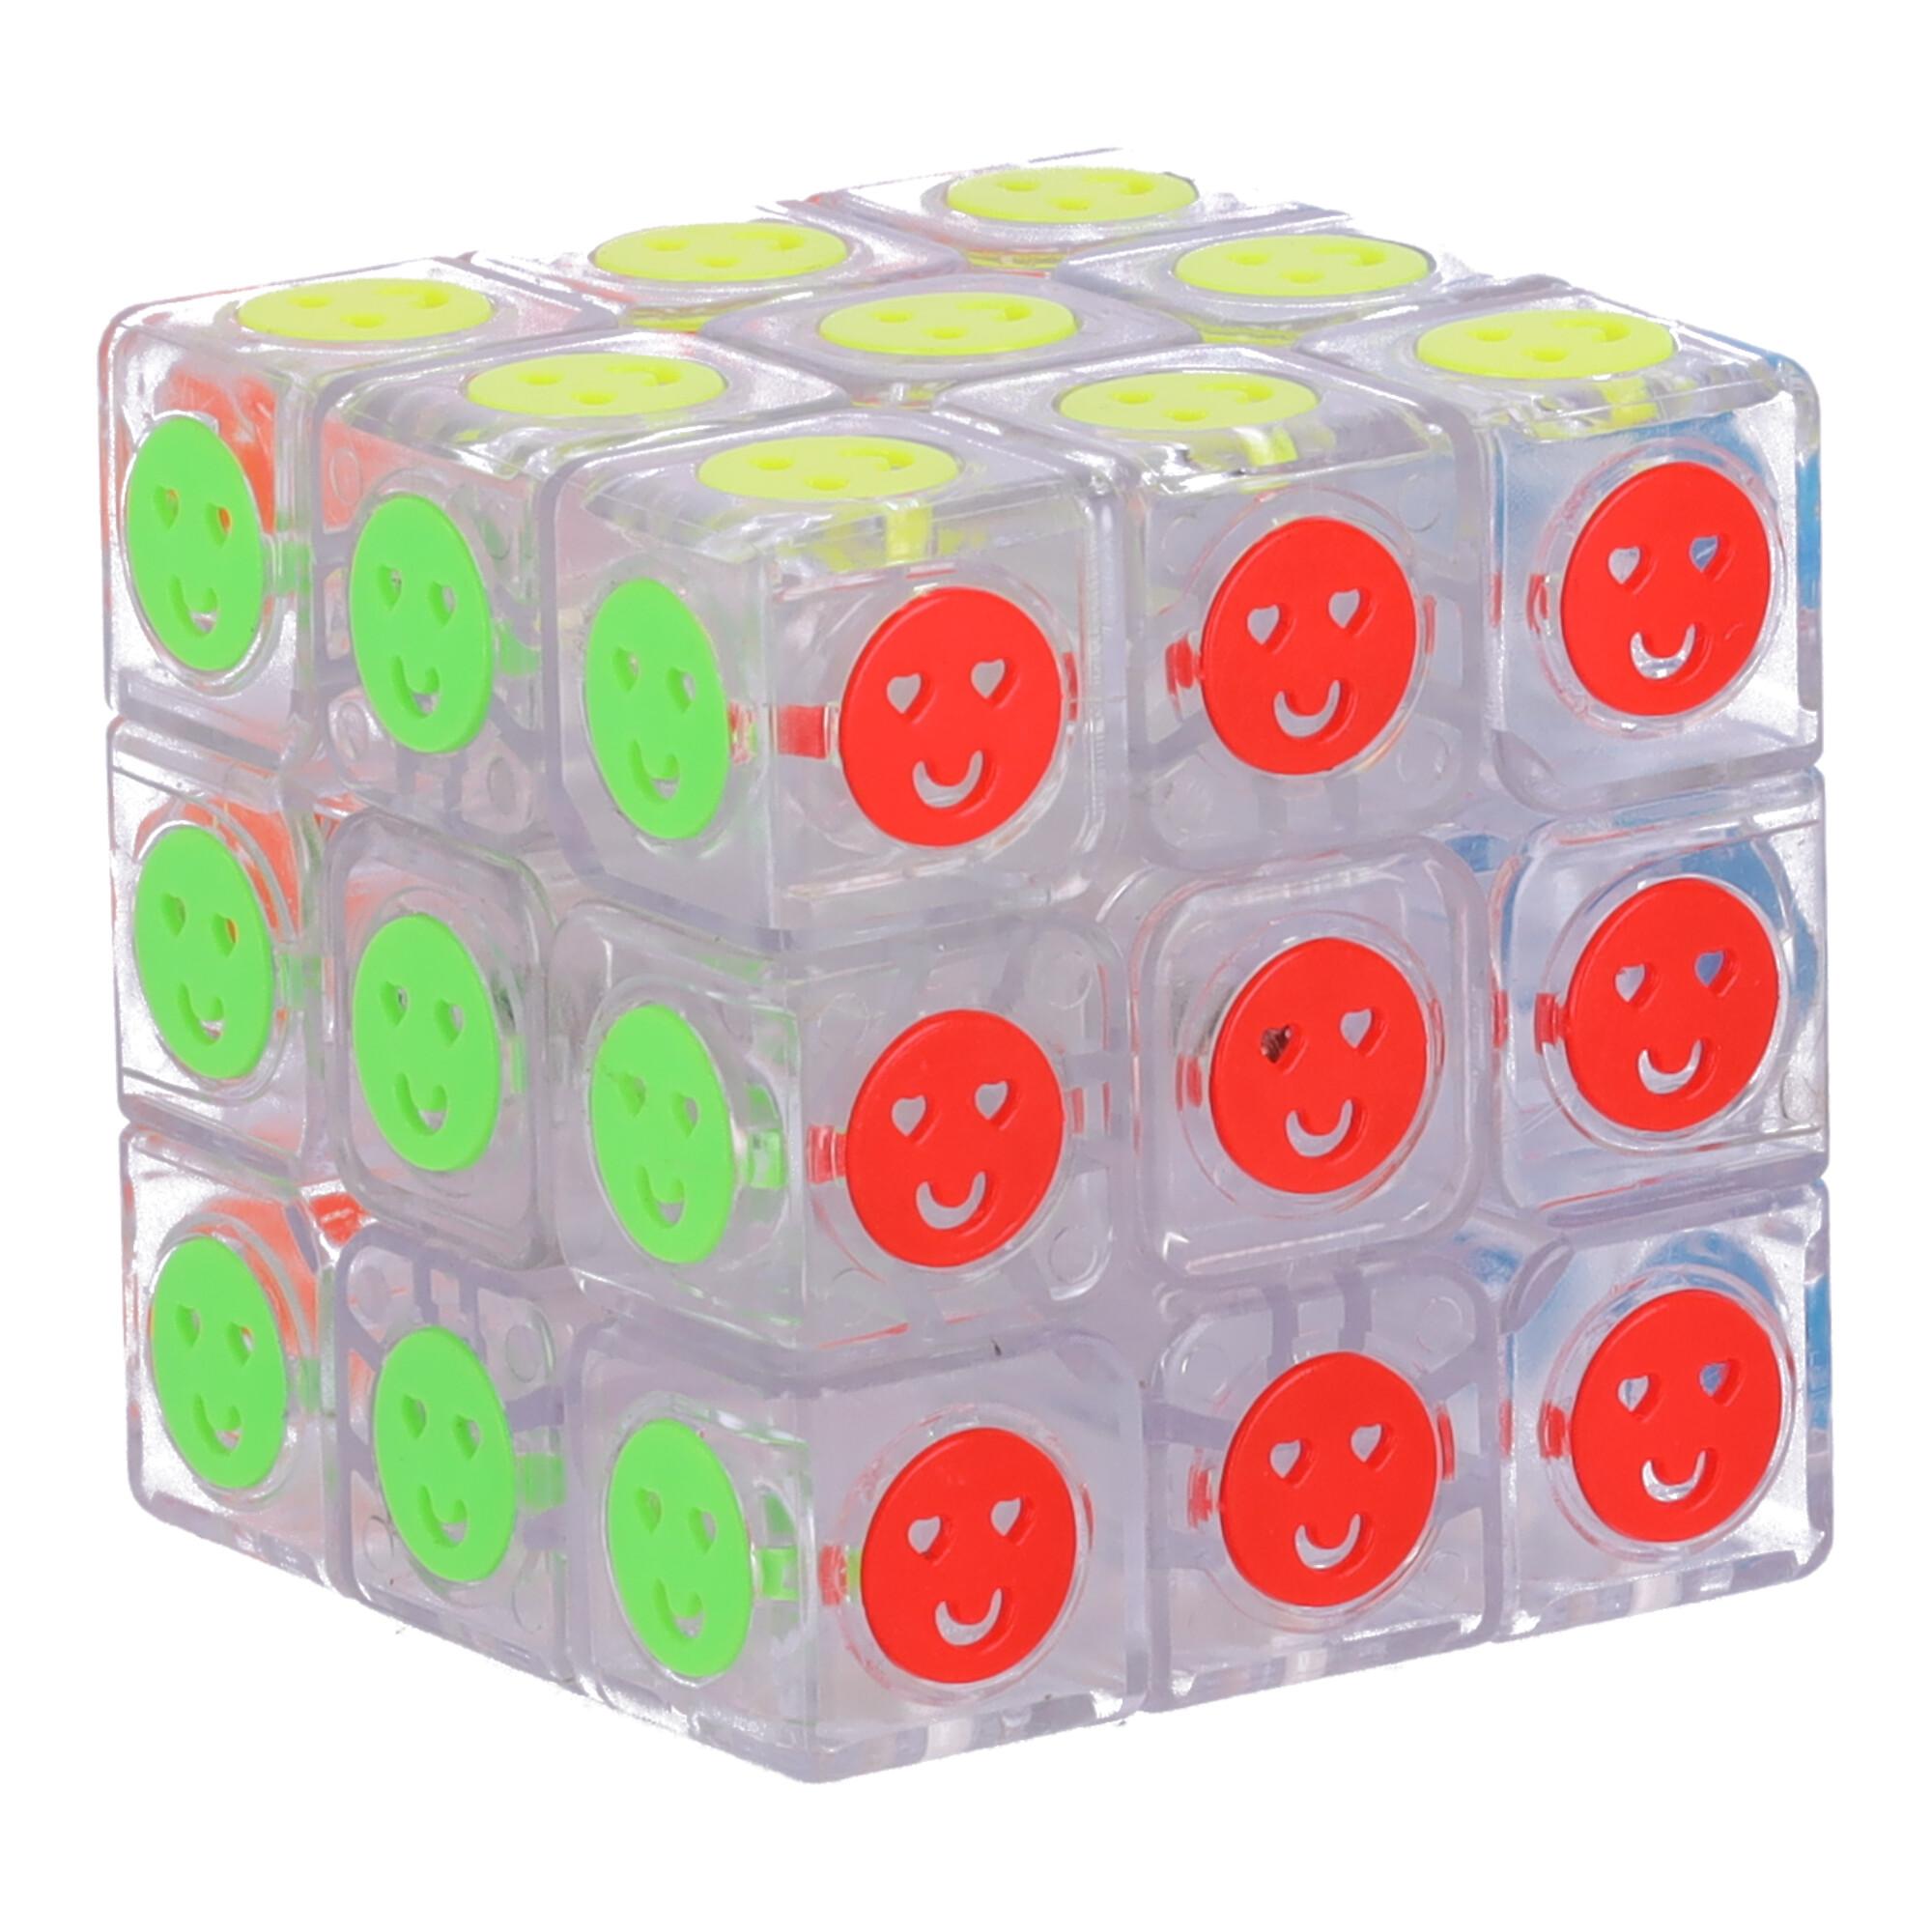 Nowoczesna układanka, kostka logiczna Kostka Rubika - typ II